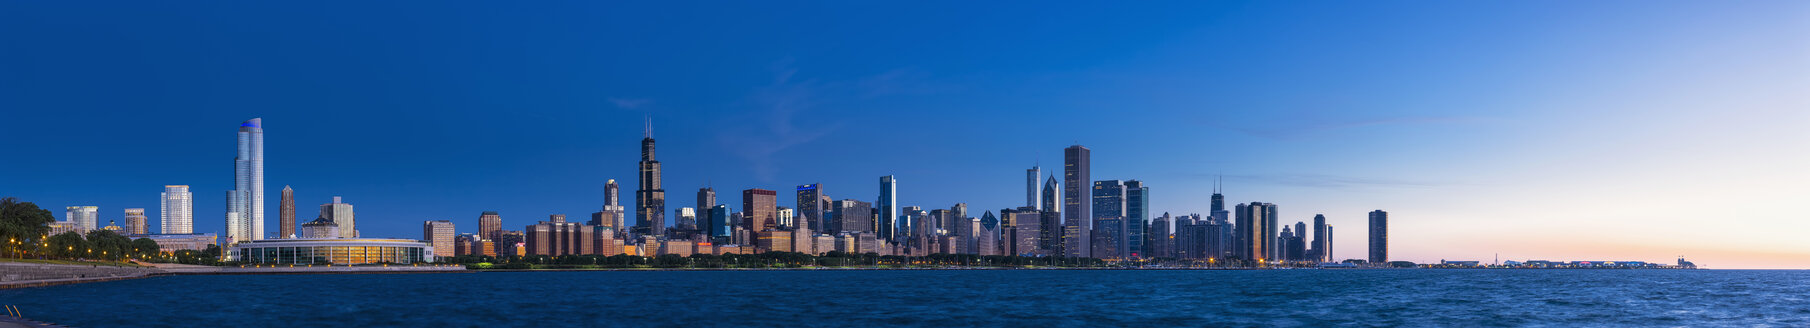 USA, Illinois, Chicago, Skyline mit Michigansee in der Morgendämmerung - FO006876